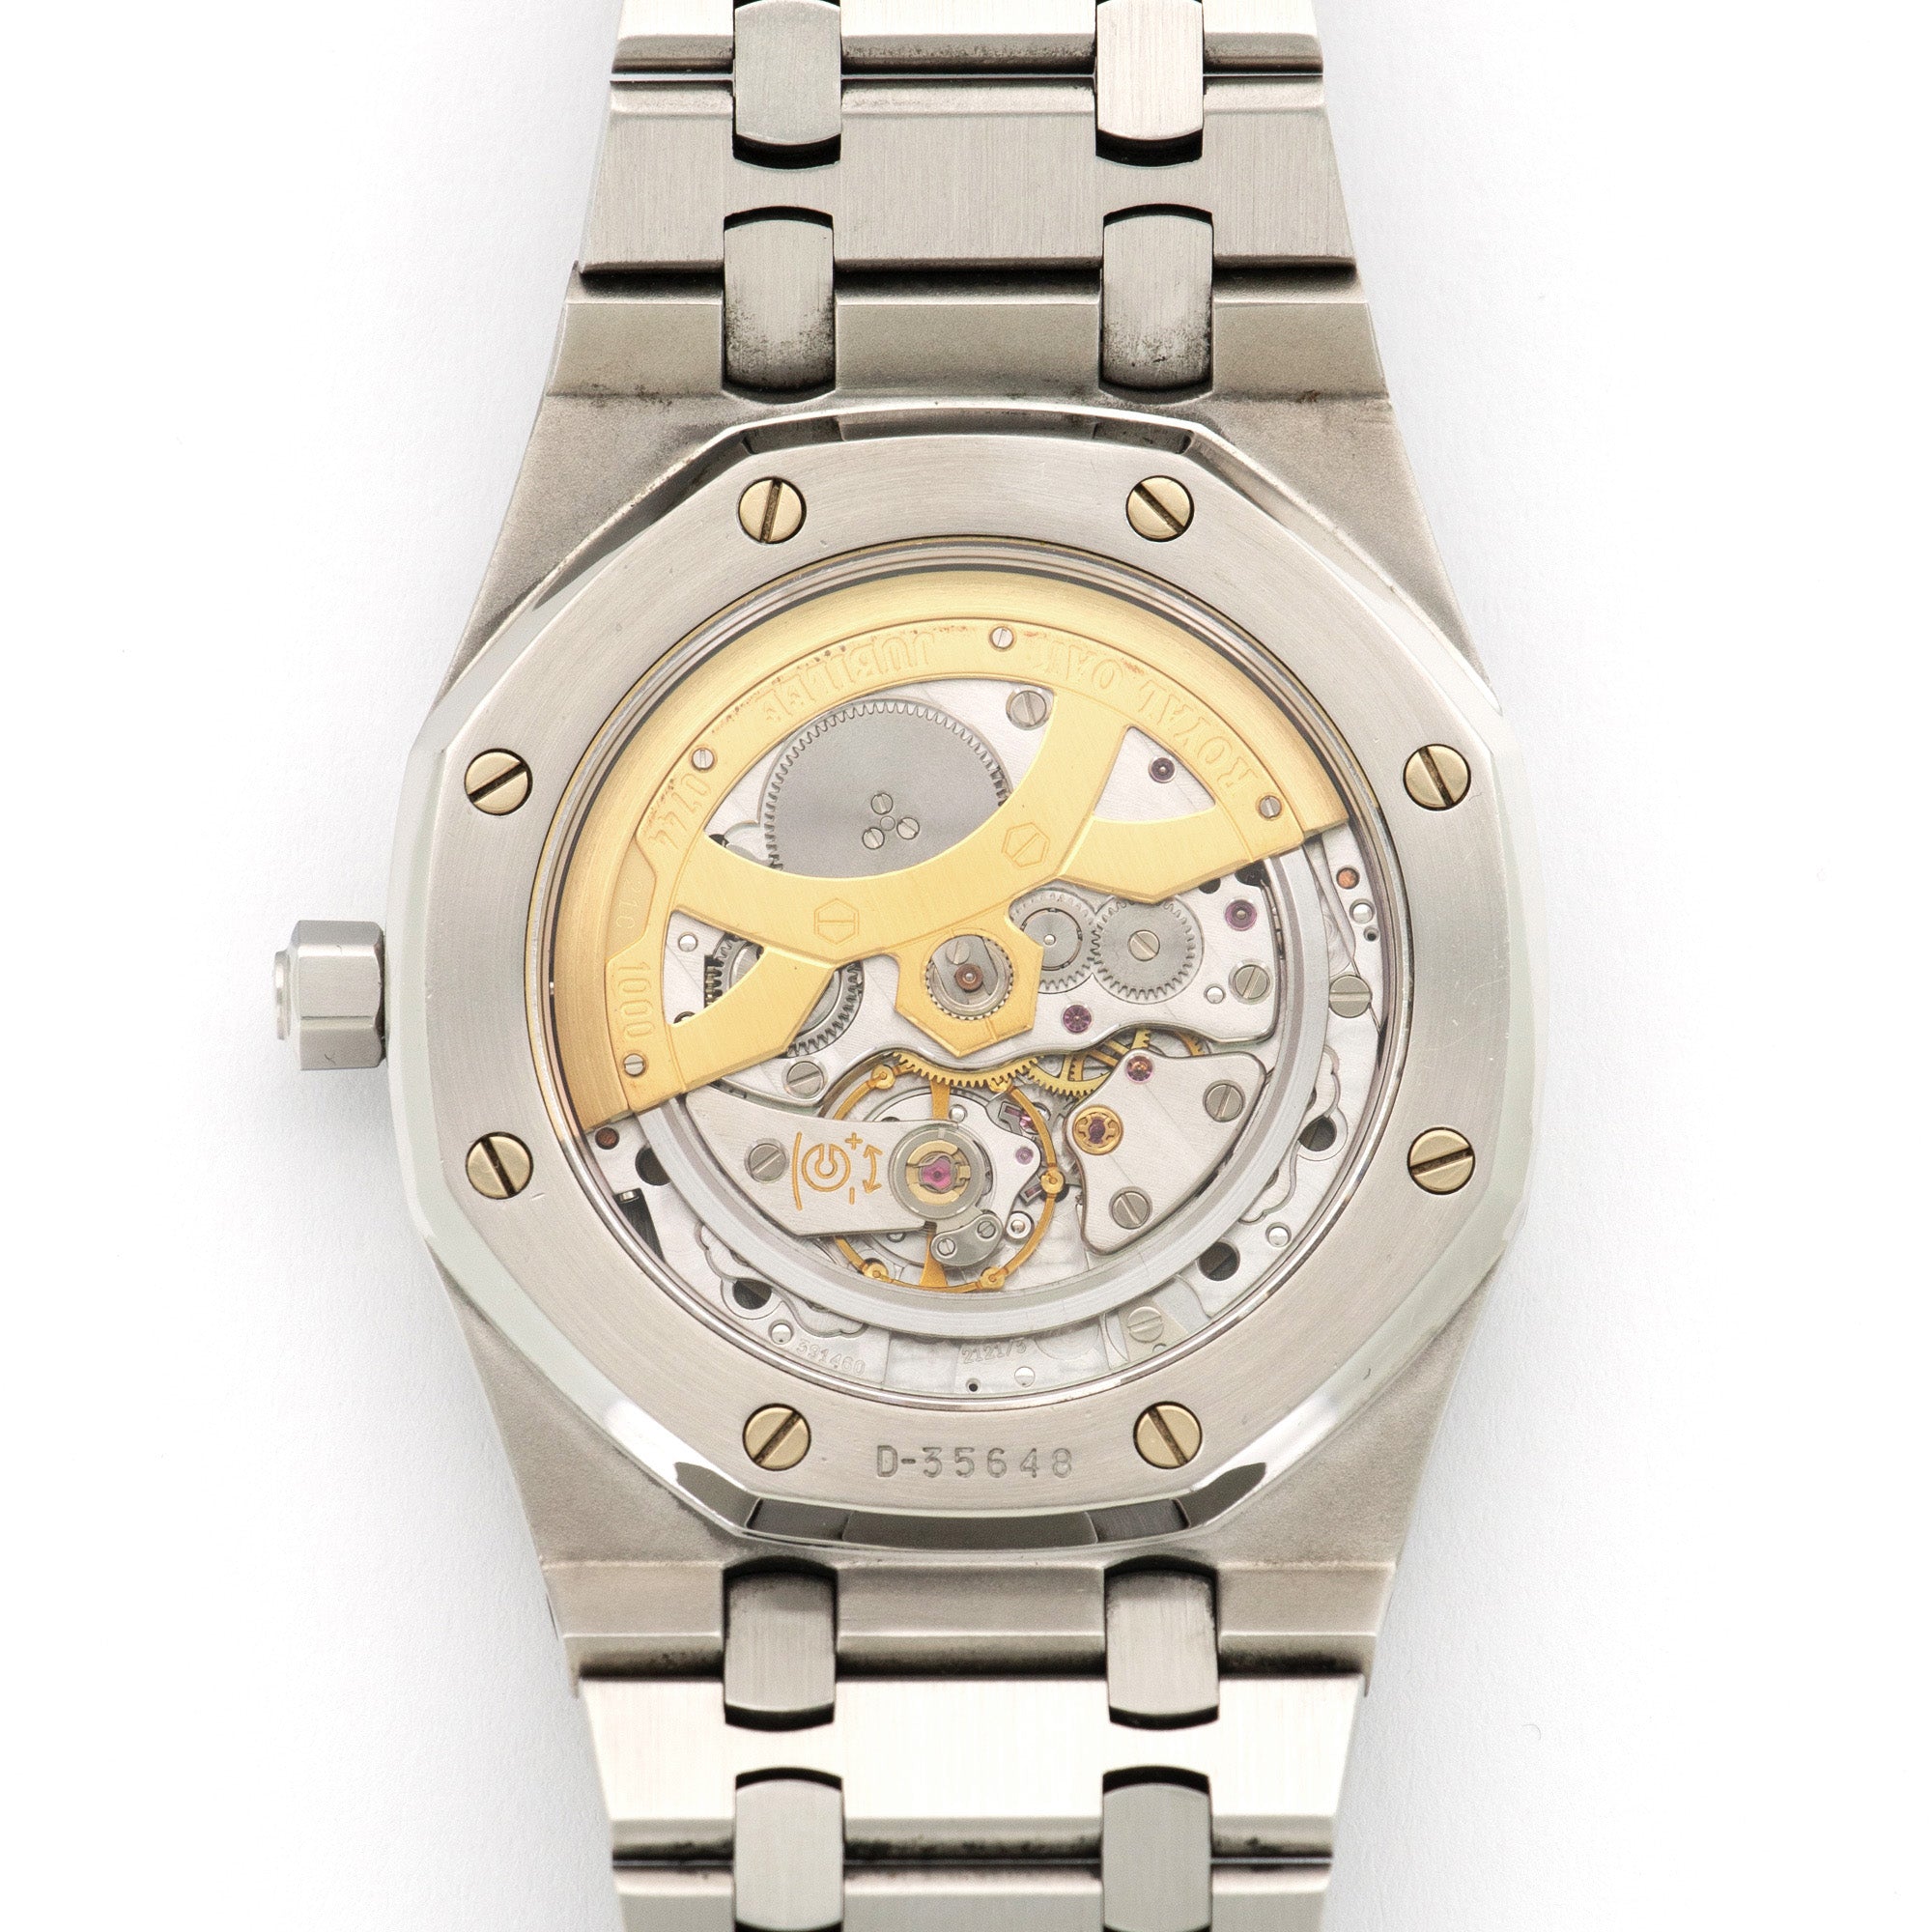 Audemars Piguet - Audemars Piguet Royal Oak Jumbo Jubilee Watch Ref. 14802 - The Keystone Watches